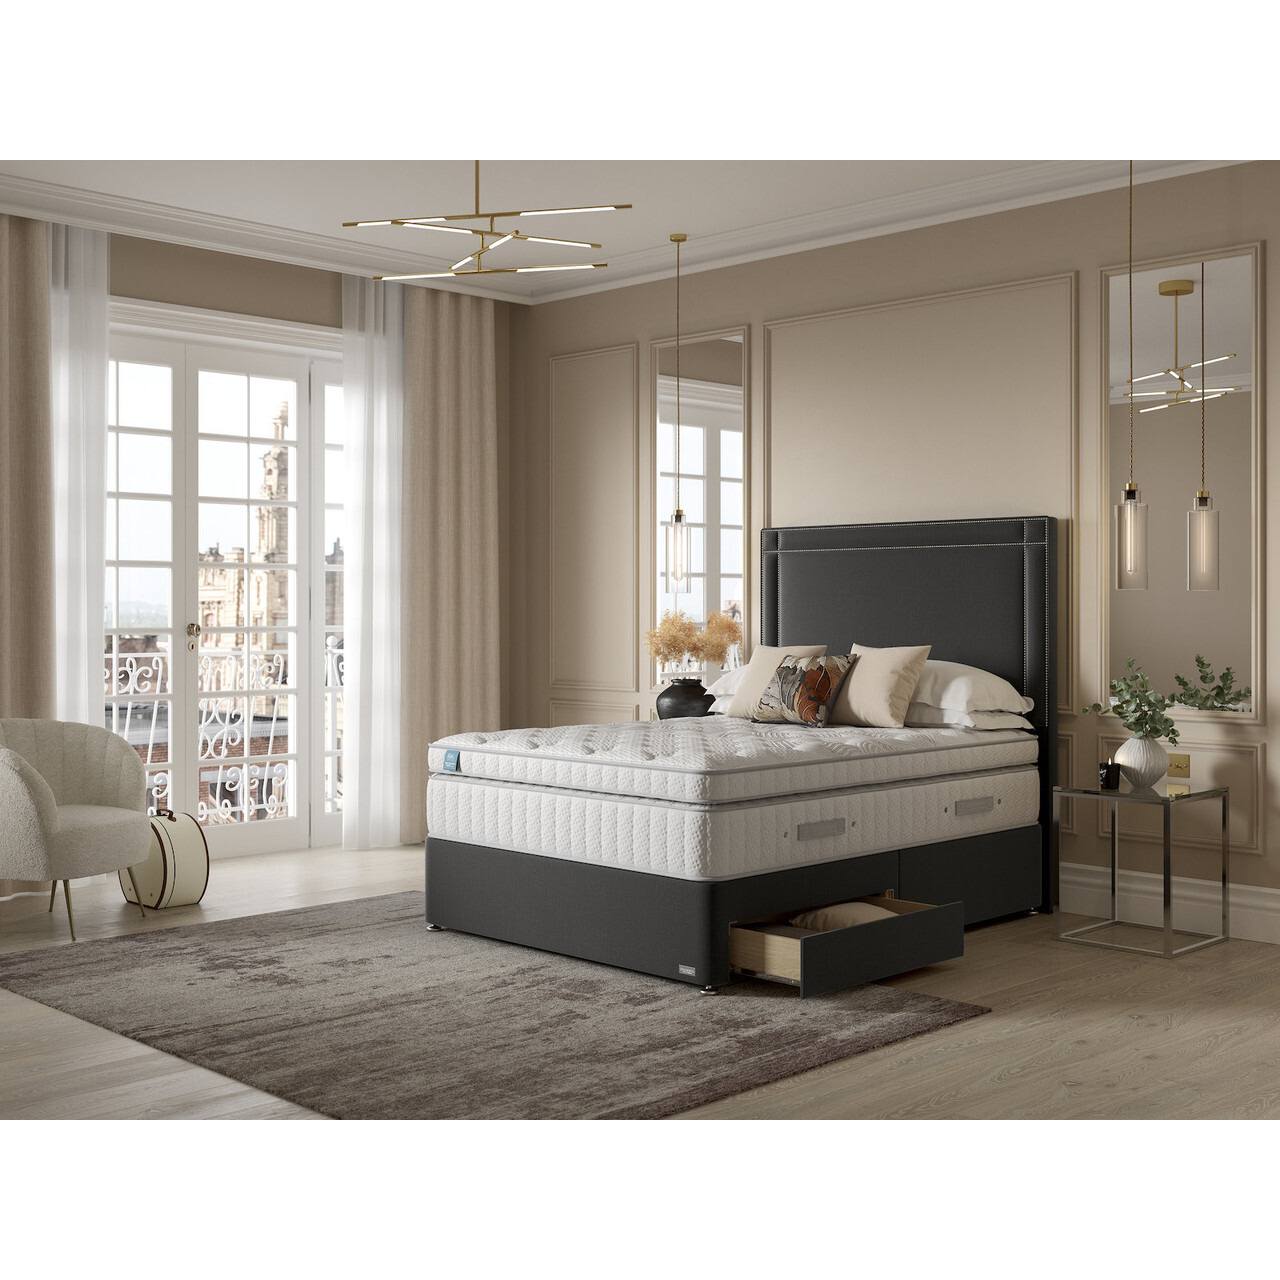 iGel Advance 4400i Plush Top Divan Bed Set On Glides - image 1